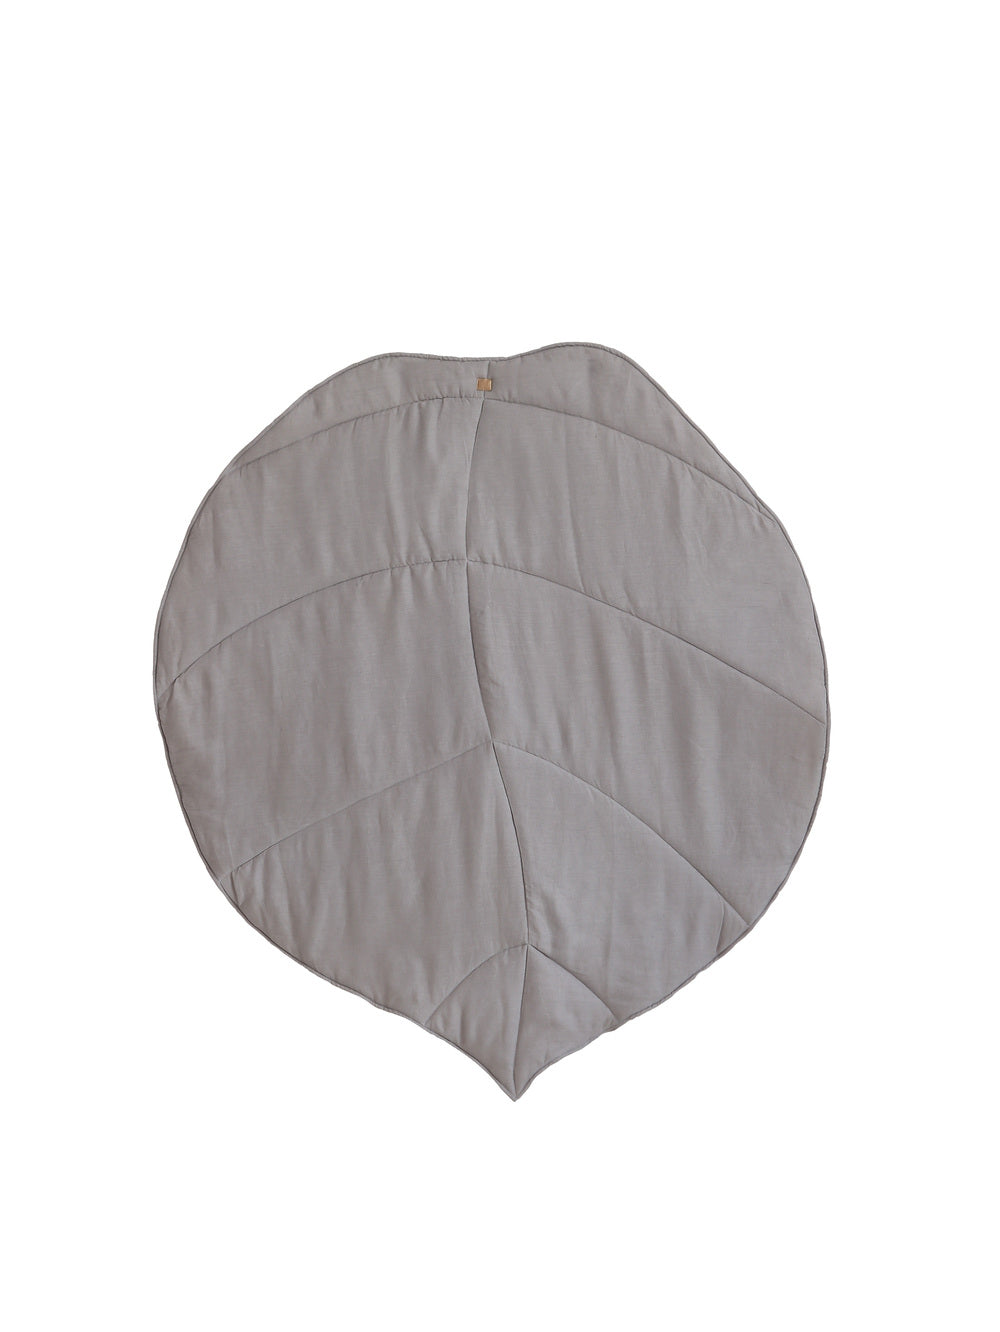 Linen “Grey” Leaf Mat